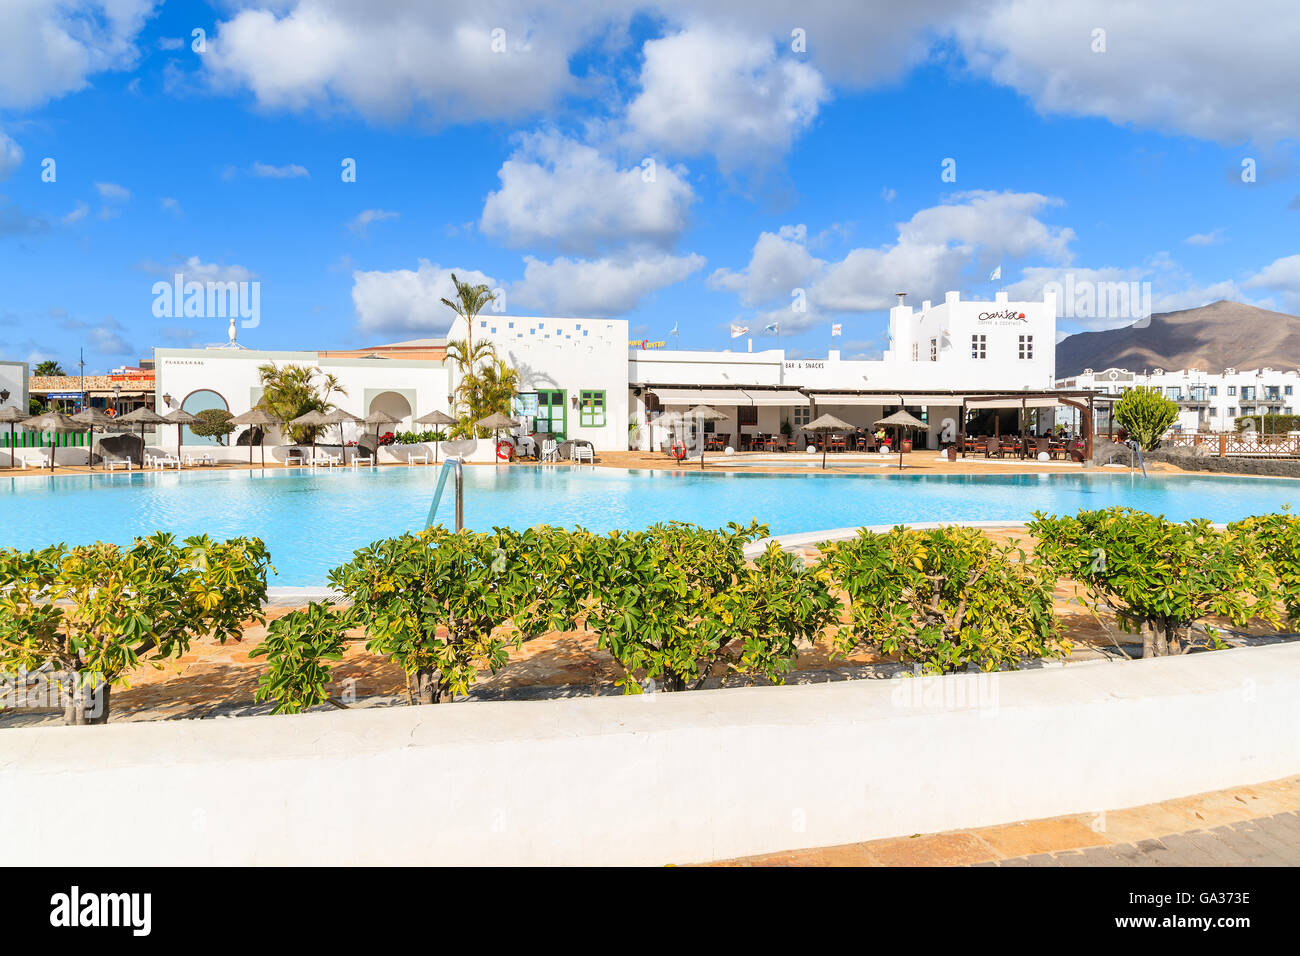 PLAYA BLANCA, LANZAROTE Insel - 17. Januar 2015: Swimmingpool Luxus Apartment-Komplex gebaut im traditionellen kanarischen Stil auf der Insel Lanzarote. Kanarischen Inseln sind ein beliebtes Urlaubsziel. Stockfoto